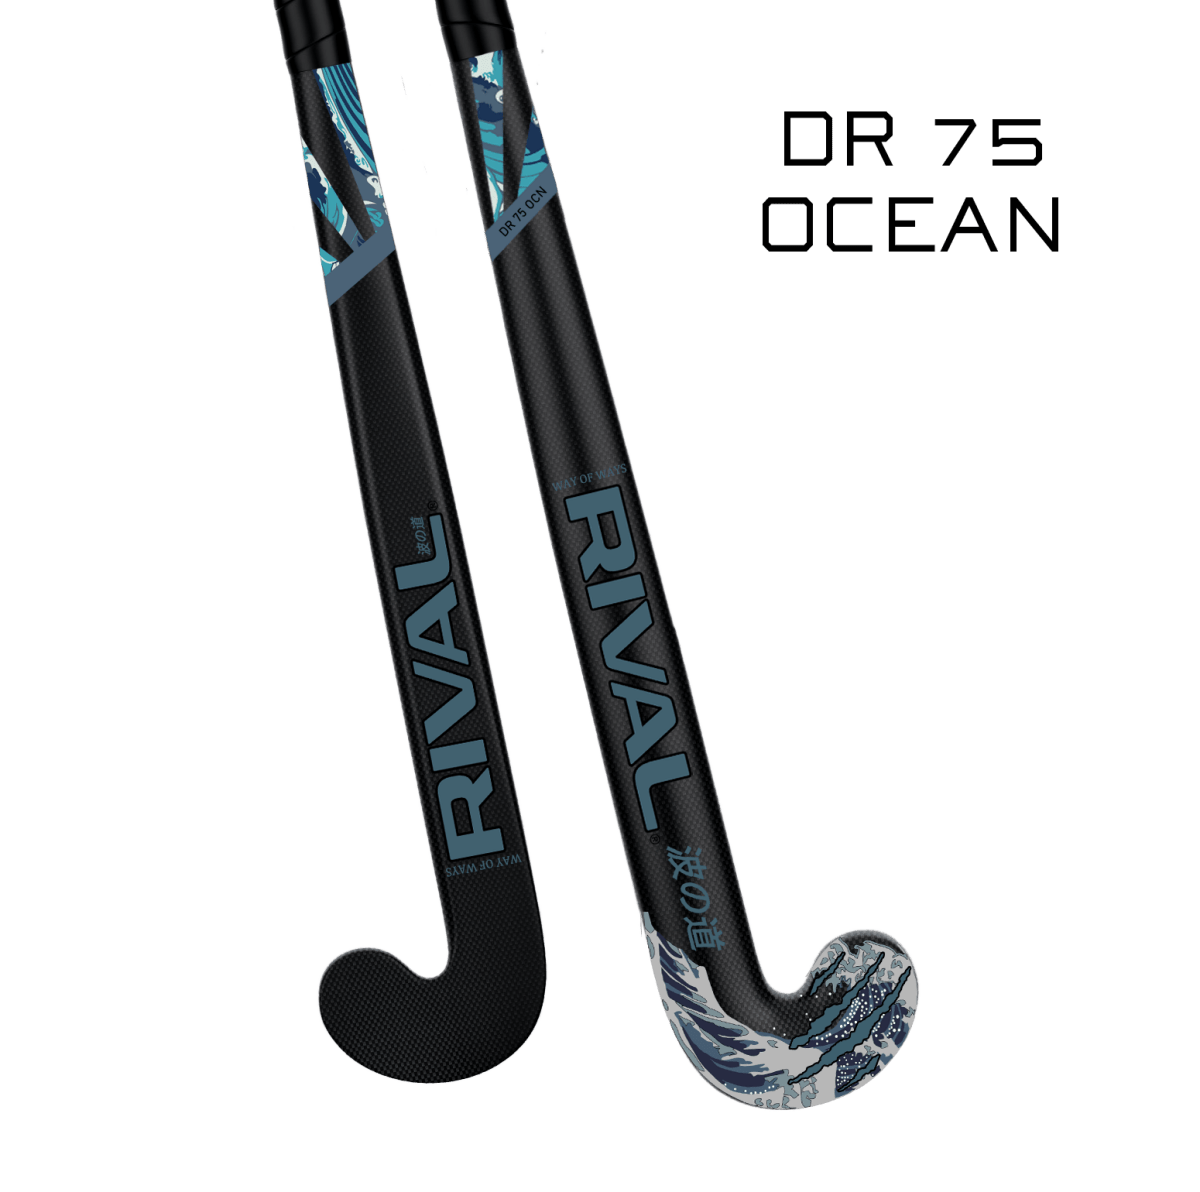 Rival DR 75 Ocean - field hockey